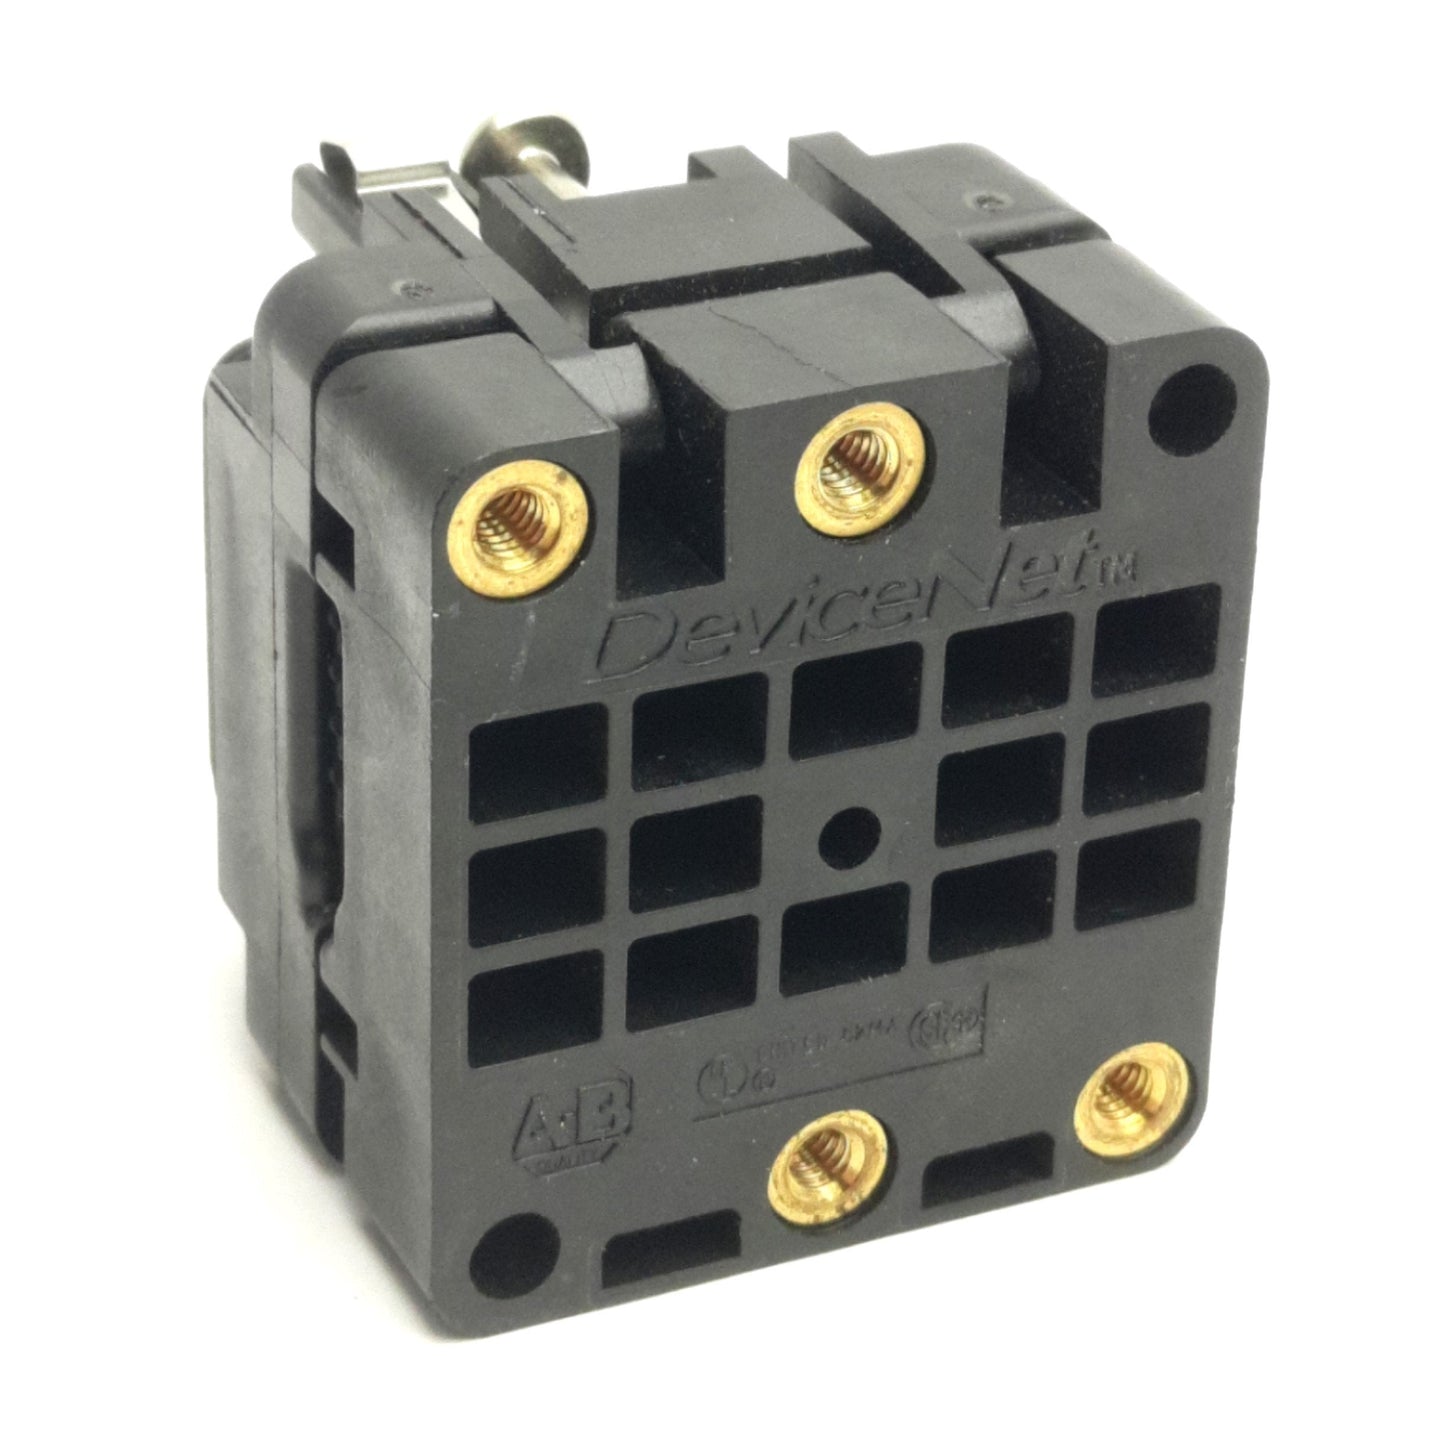 Allen Bradley 1485P-P1E4-R5 Device Net KwikLink SealedConnector *Incomplete*